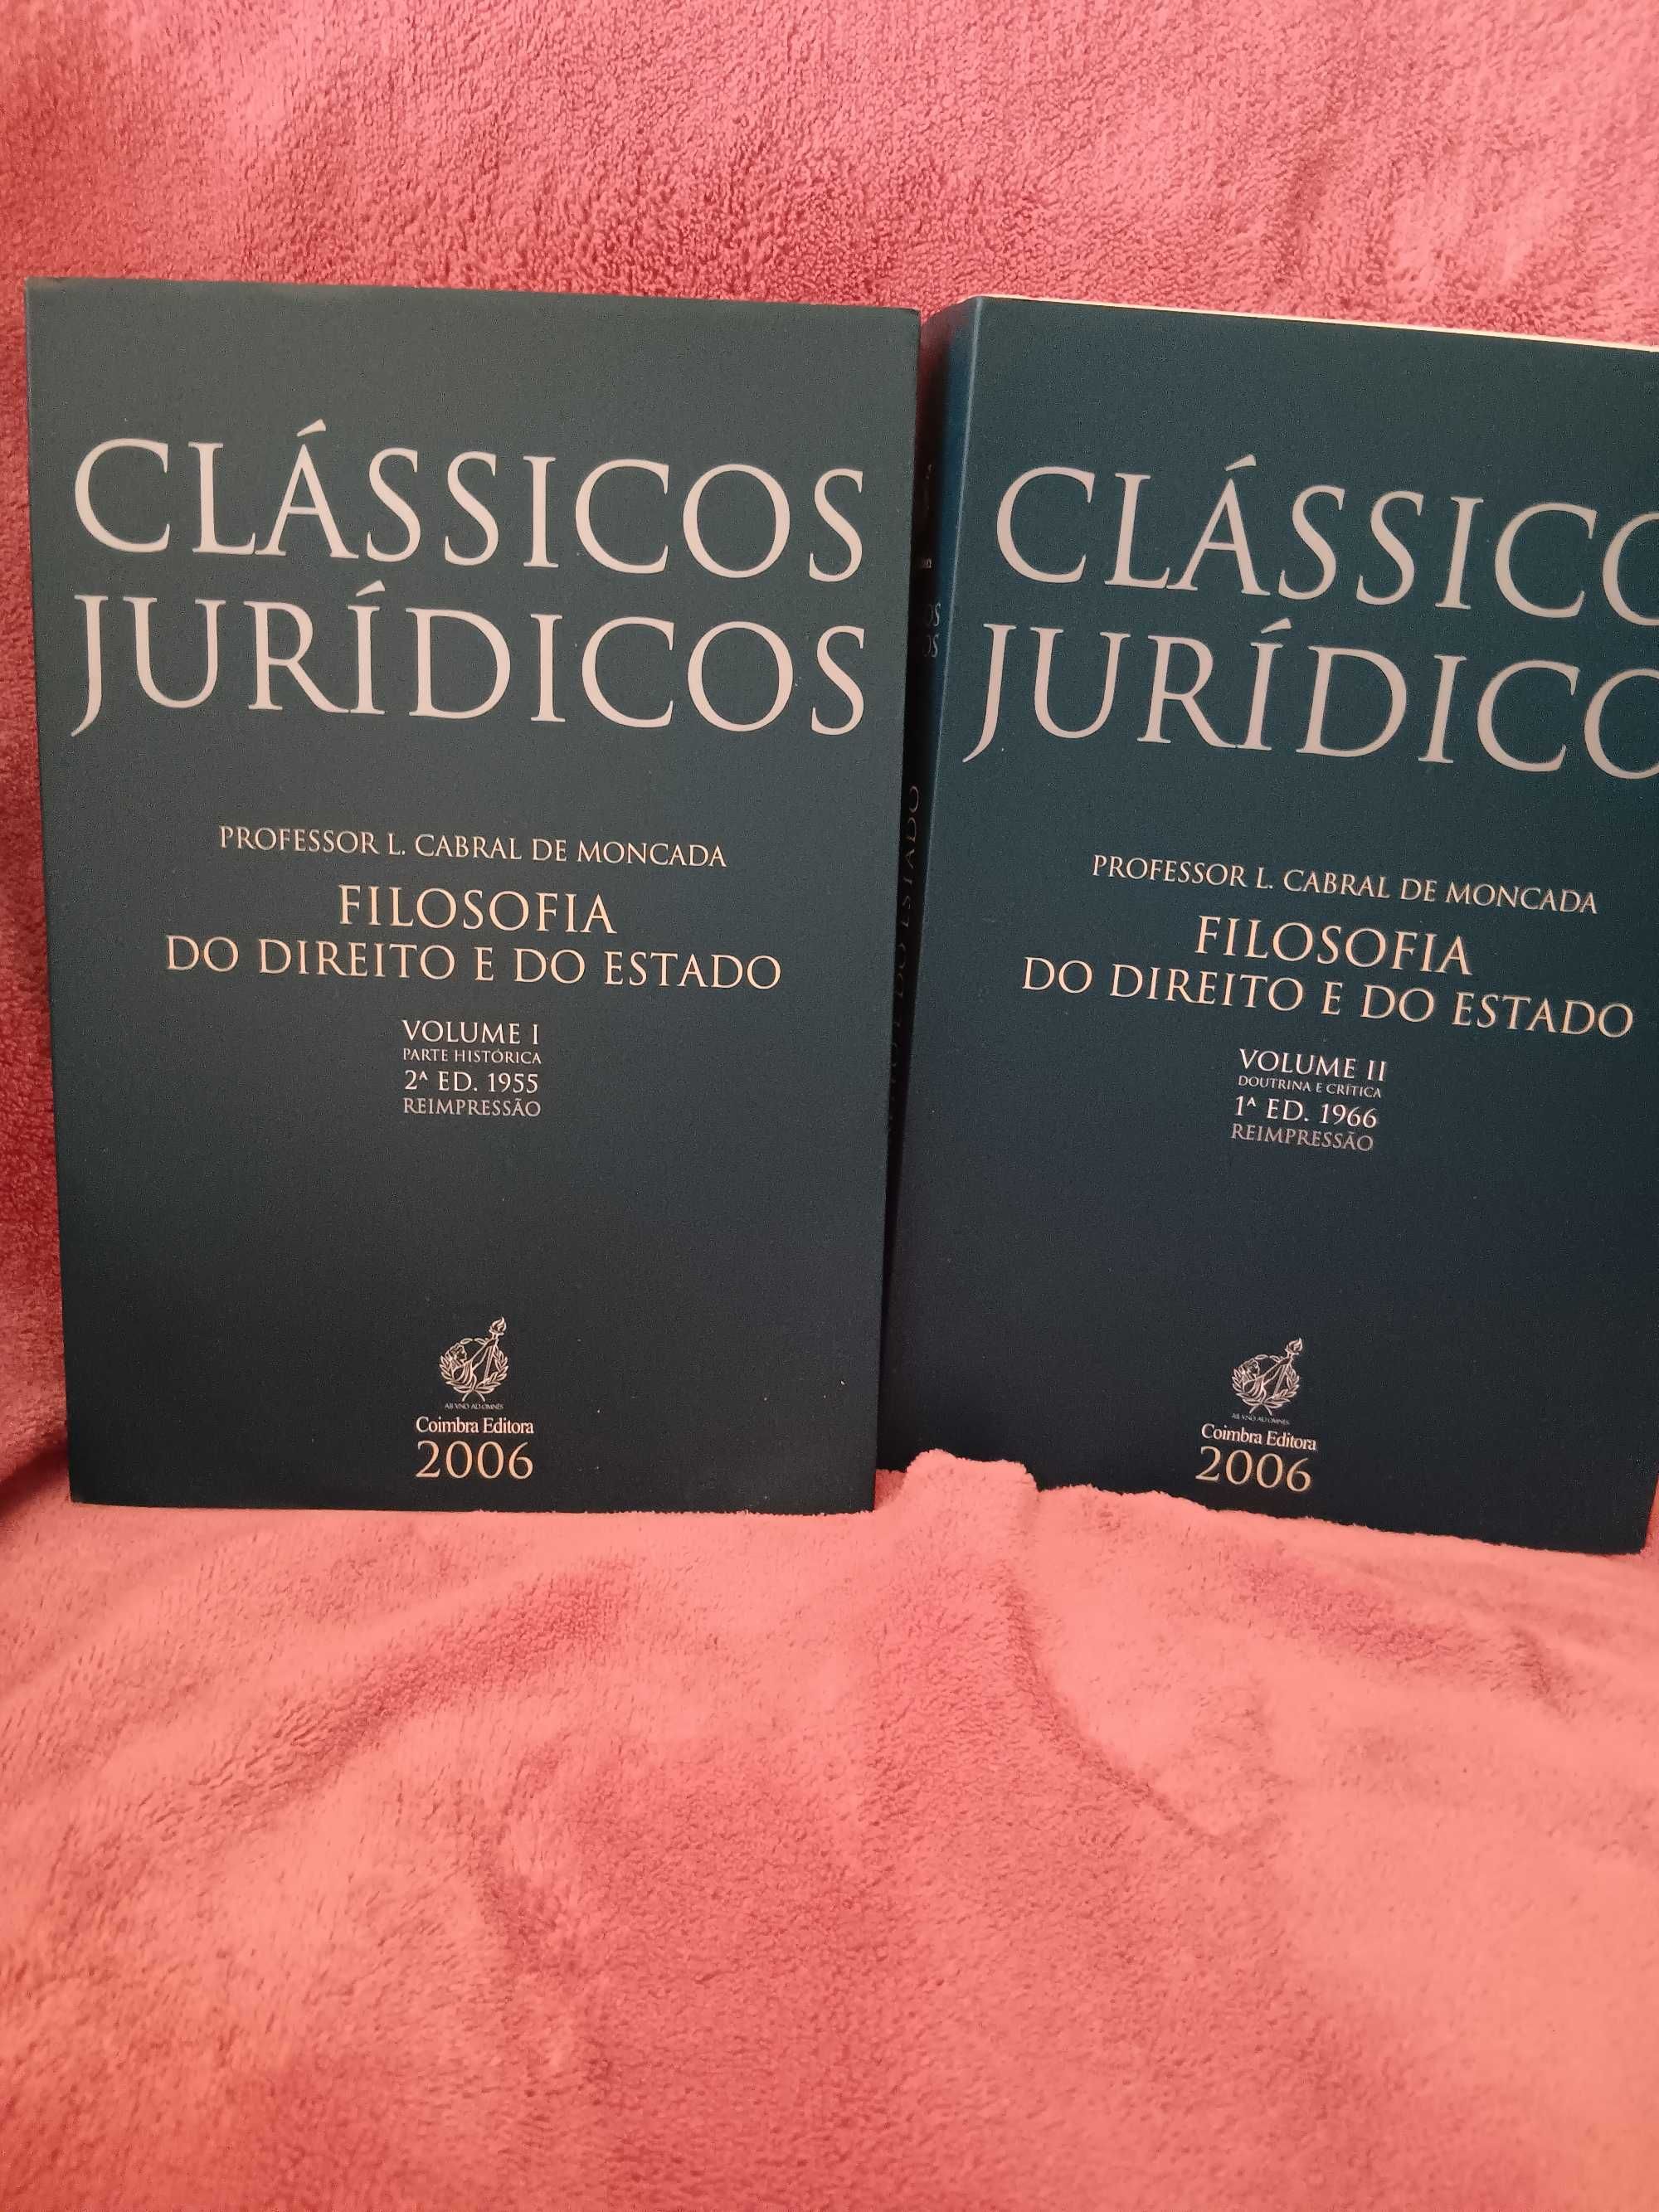 Clássicos Jurídicos, Cabral de Moncada